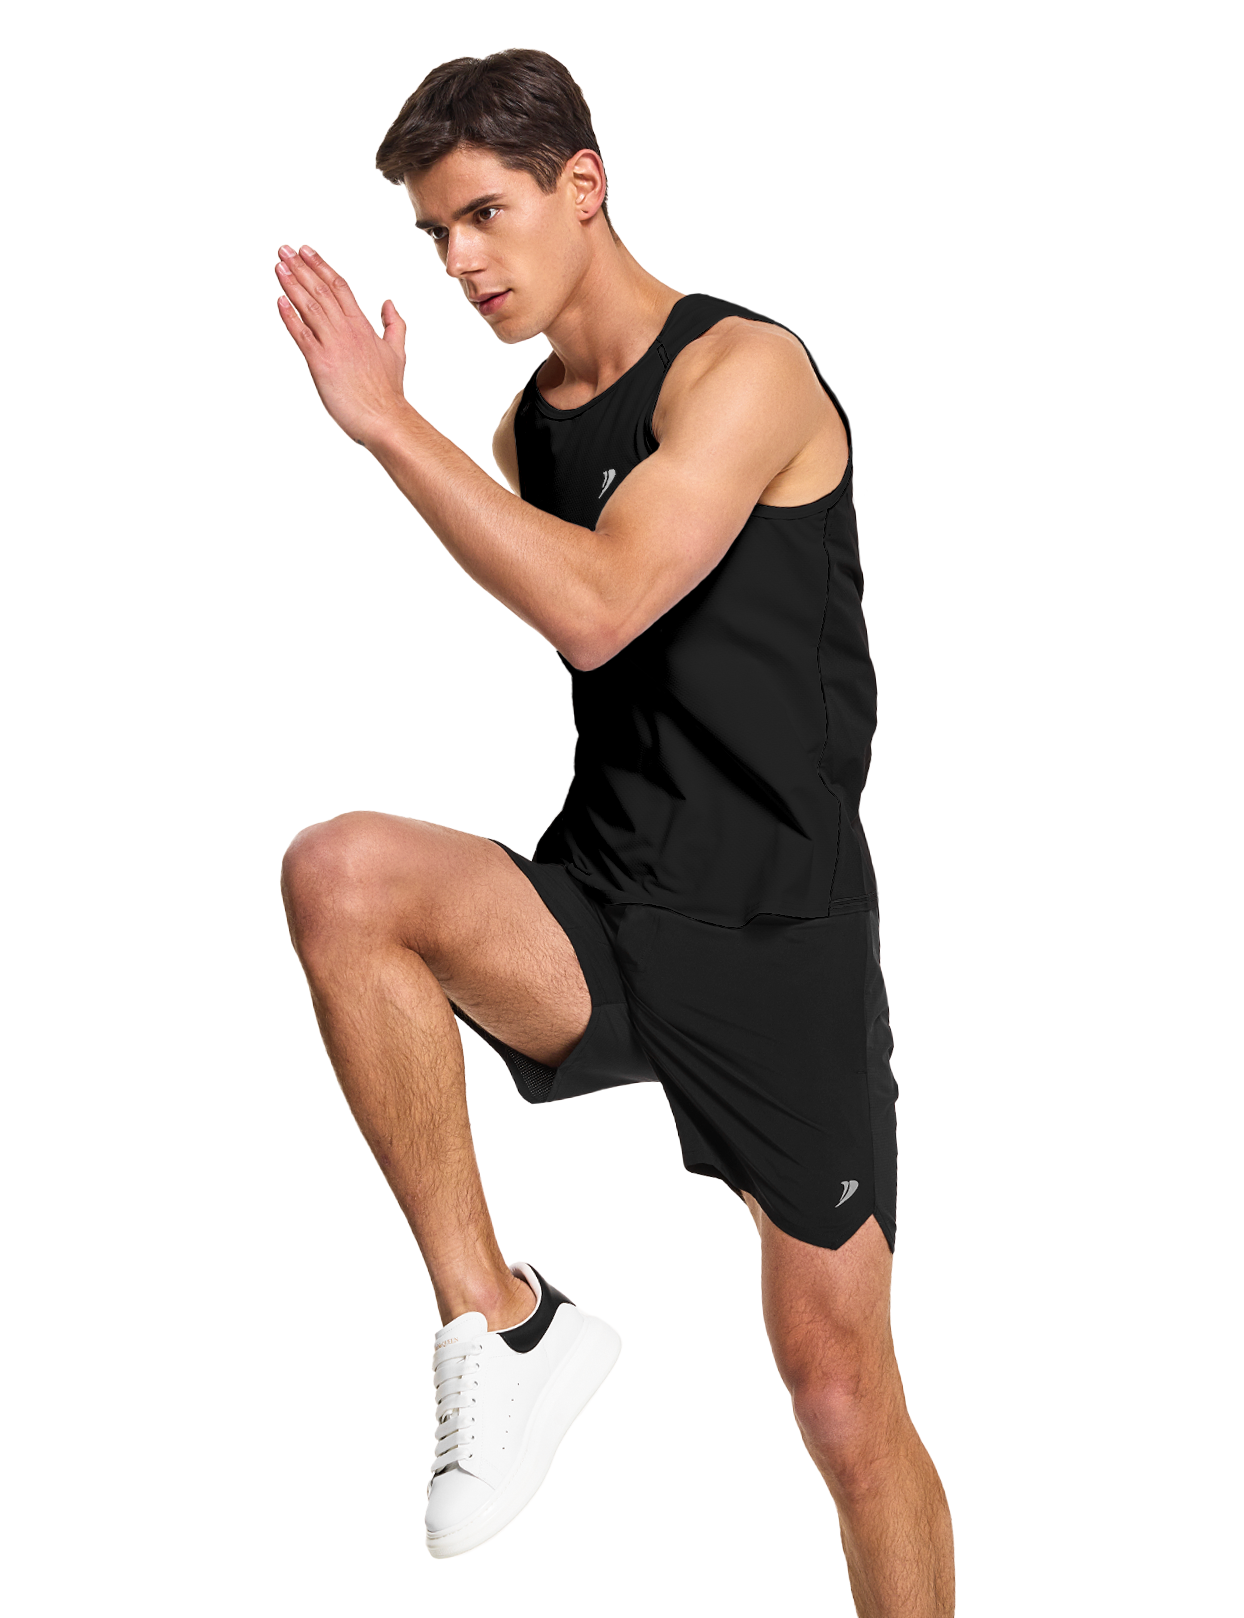 mens running workout gym swim tank top black